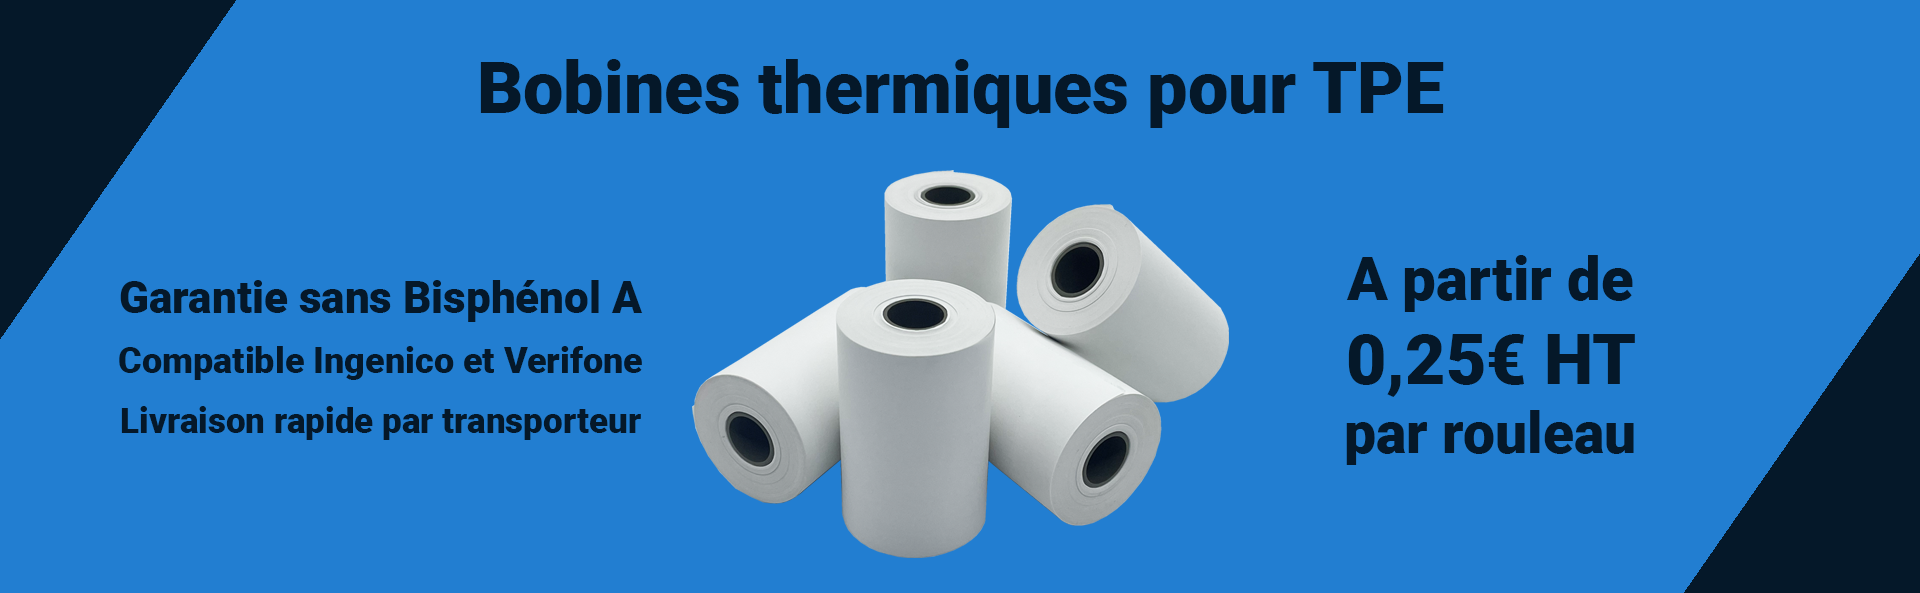 Bobines thermiques pour TPE